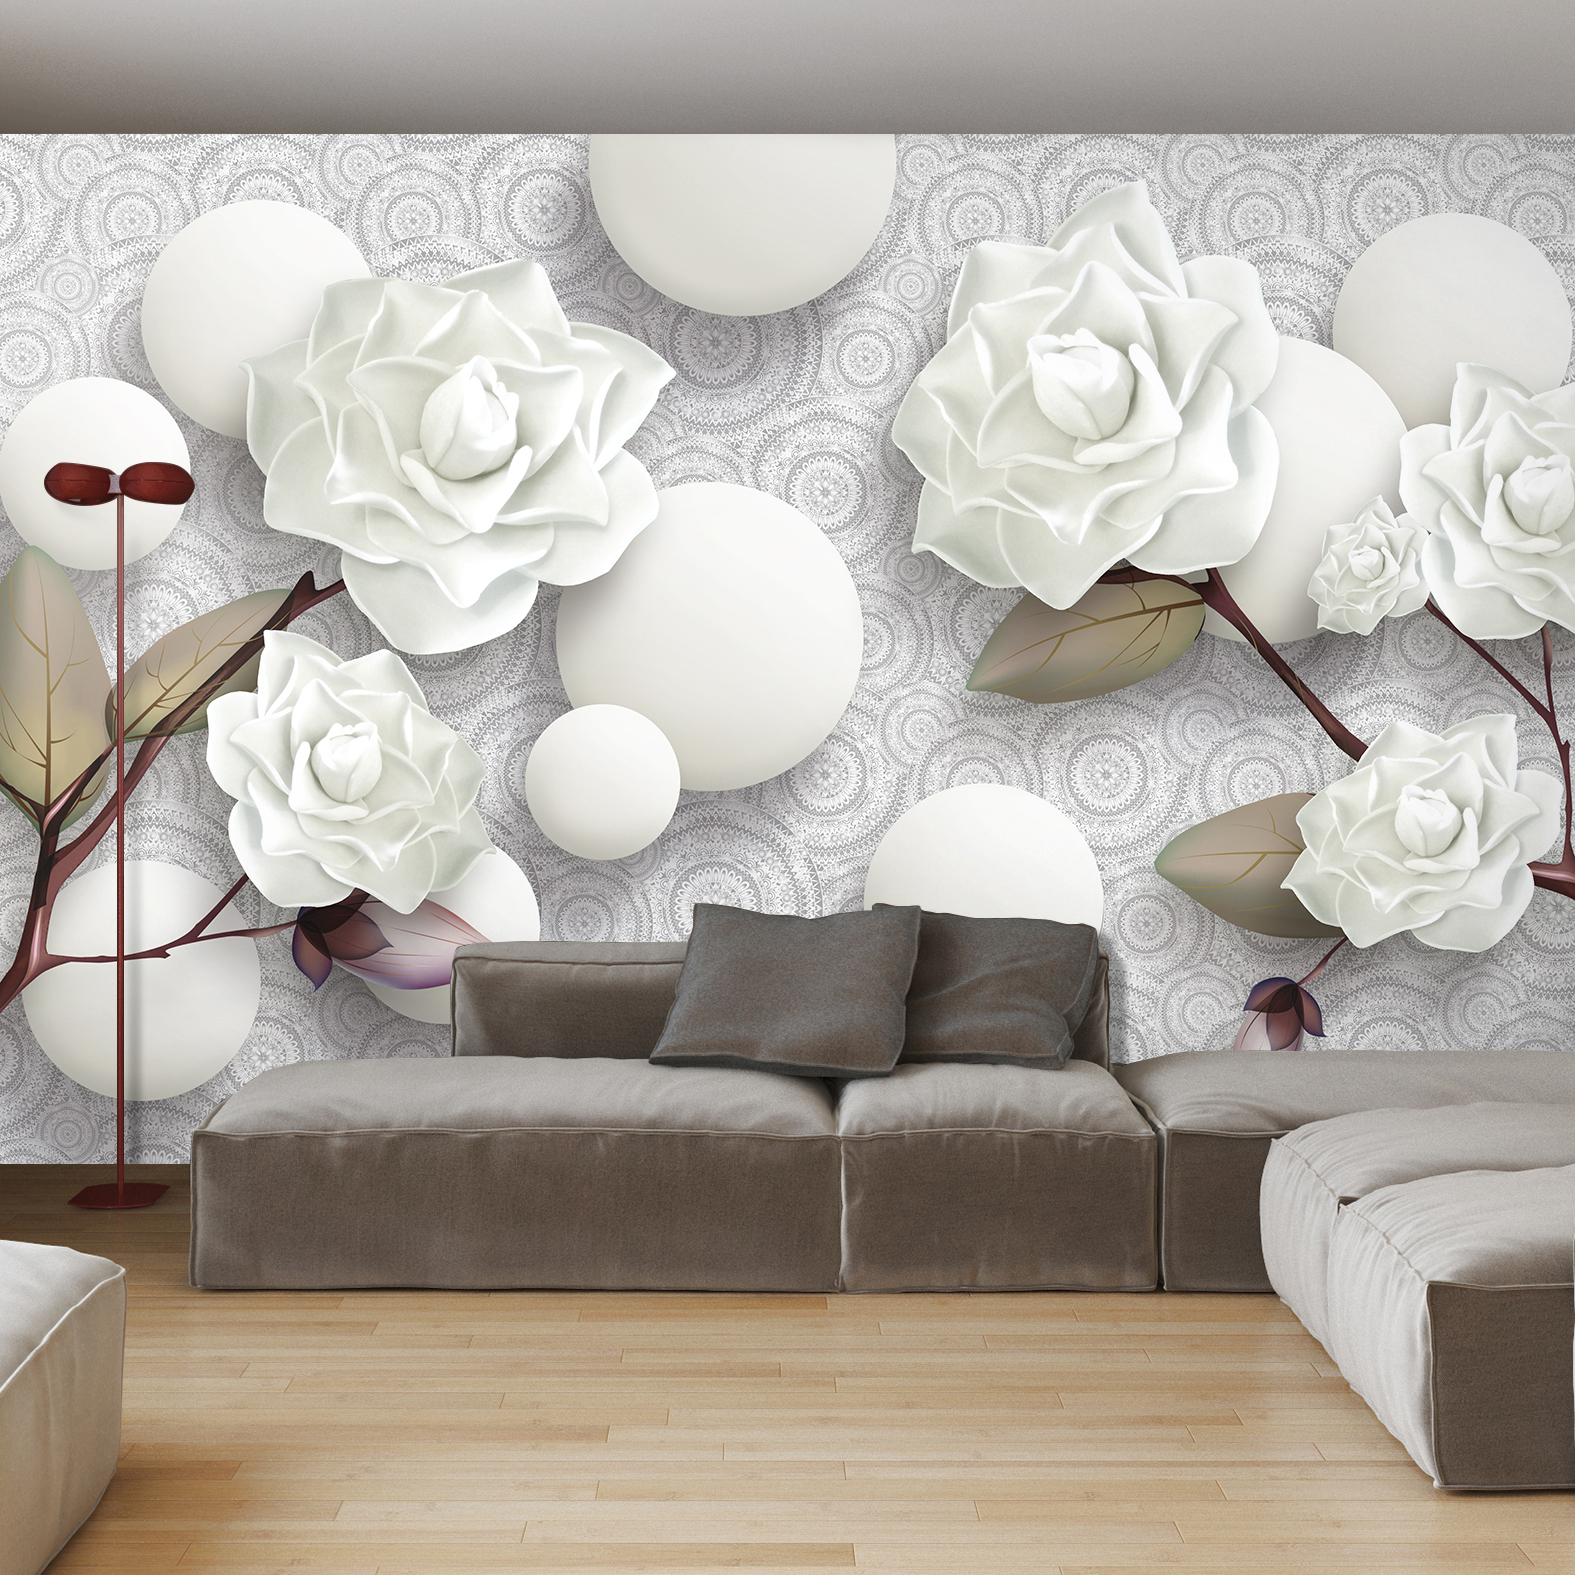 Фотообои Photostena 3D белые розы и шары 4,08 x 2,7 м семечки от мартина отборные белые соленые 100 г